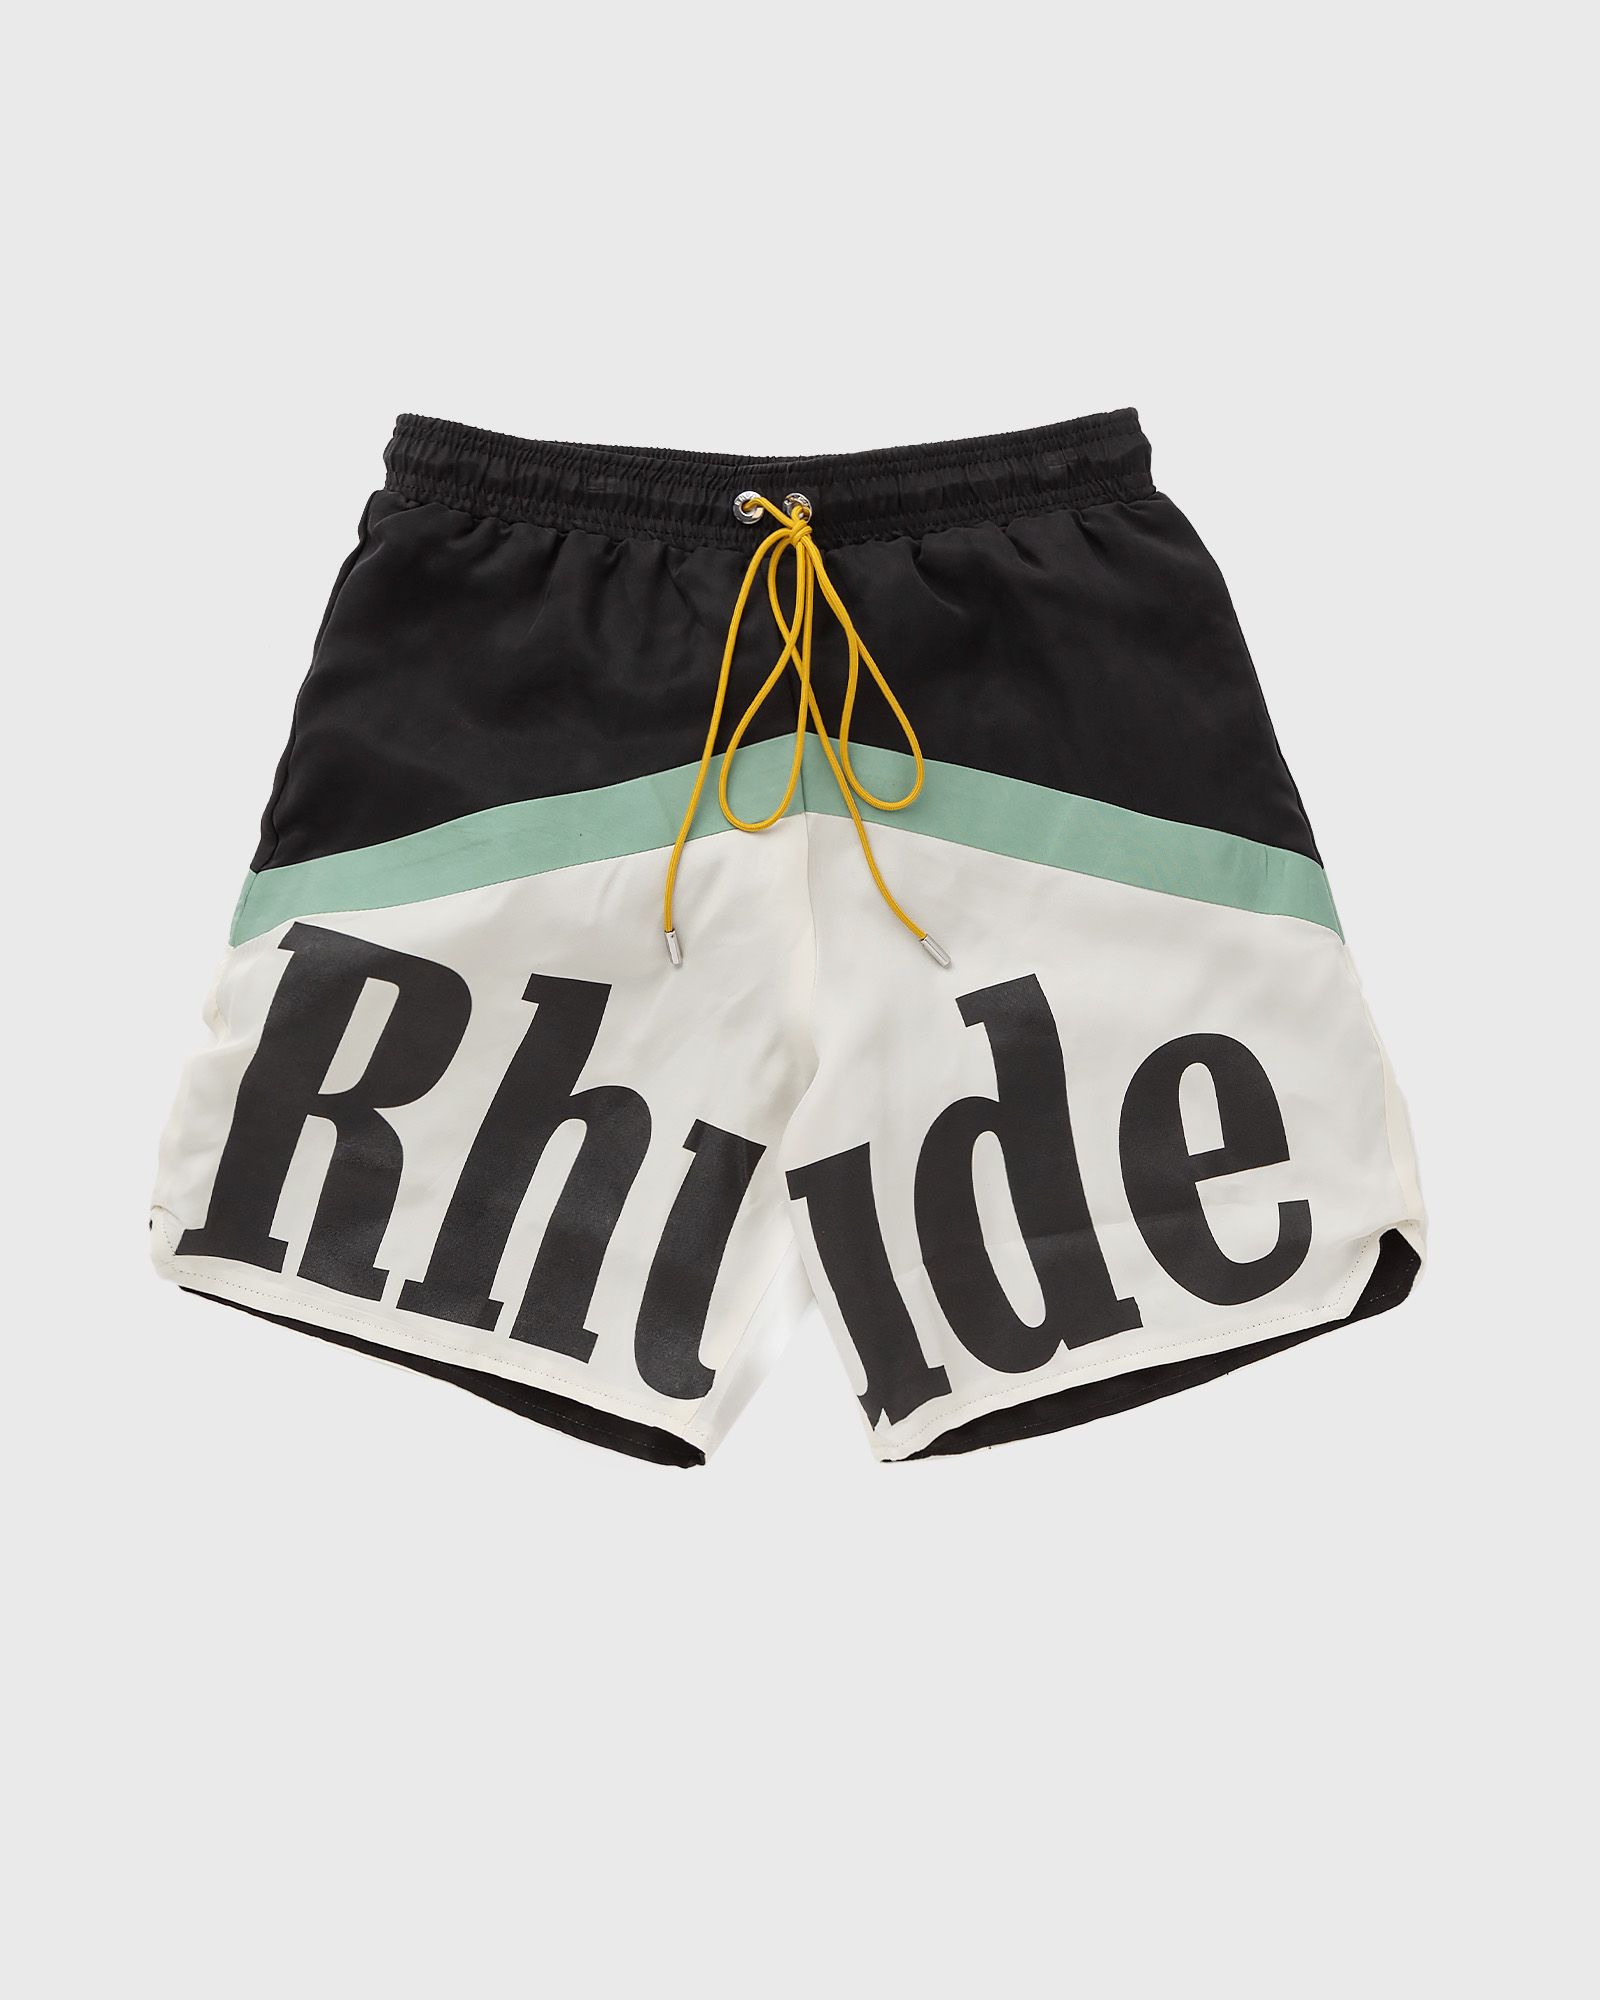 rhude awakeing short men sport & team shorts